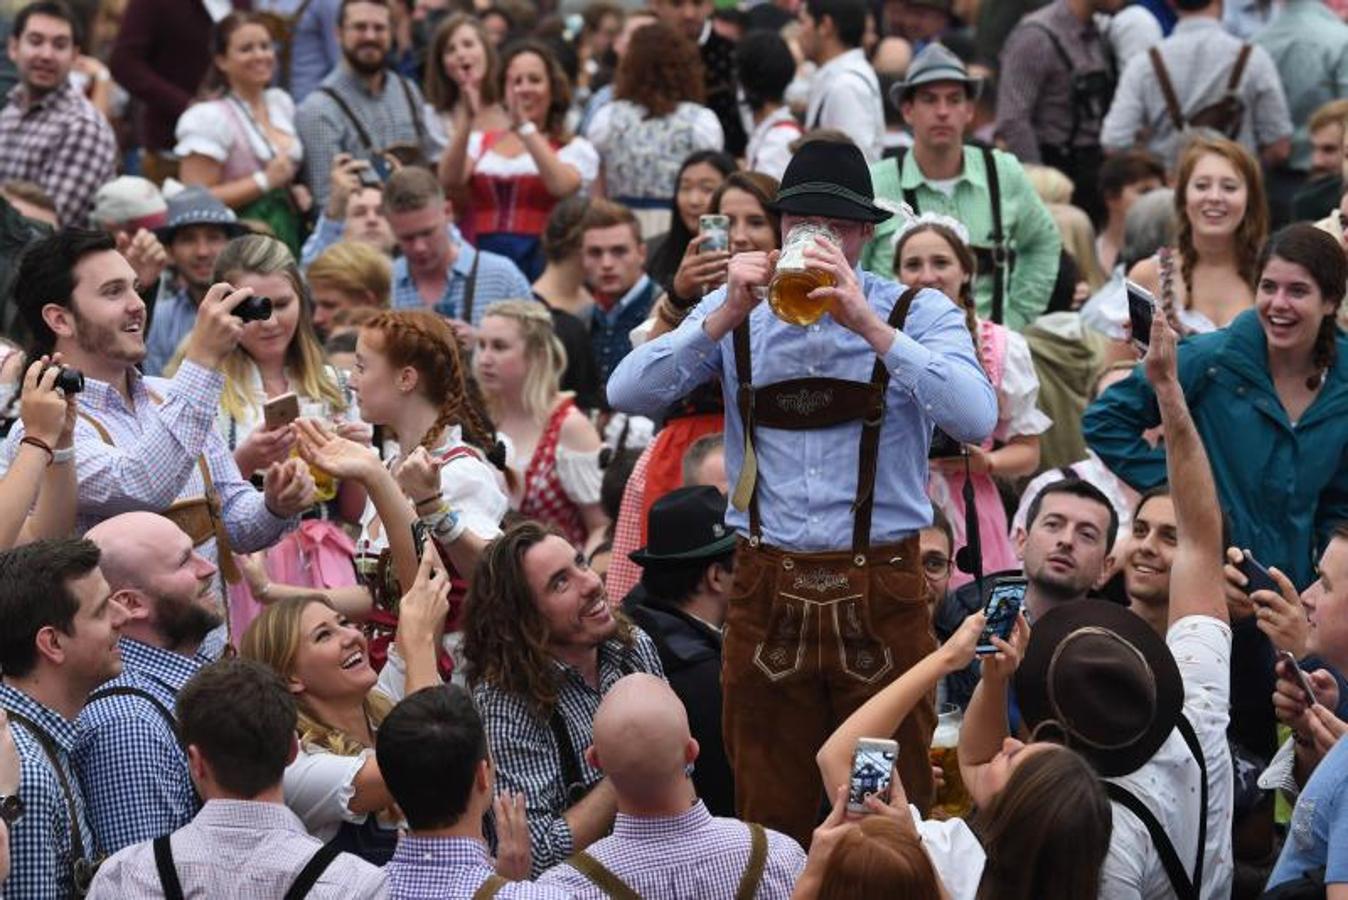 Como en otras ocasiones, el alcalde de la ciudad es el encargado de inaugurar el festival abriendo el primer barril de cerveza del día. Cientos de asistentes muestran su fidelidad al evento y acuden, aunque el tiempo no acompañe, al festival.